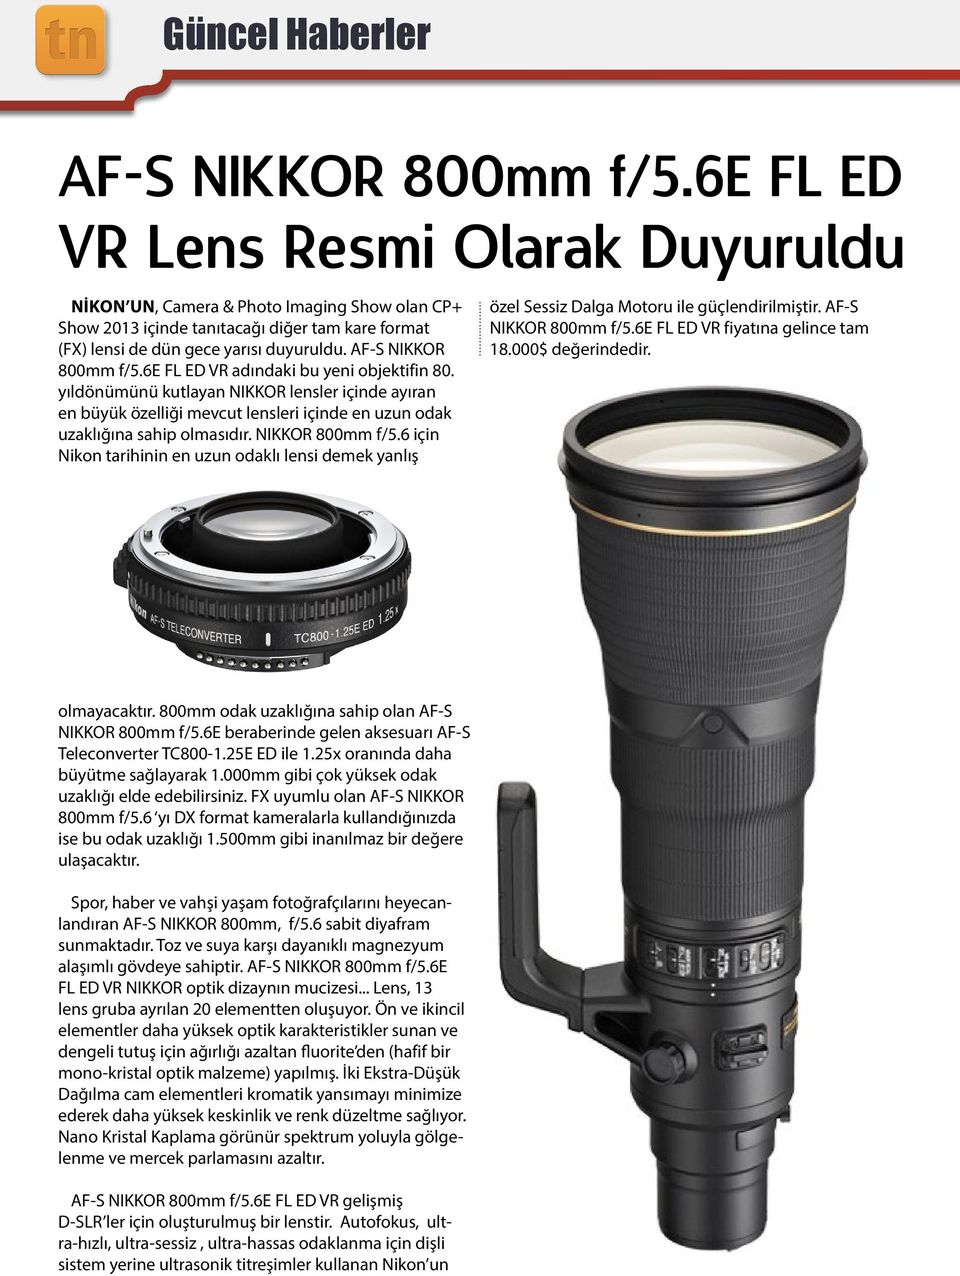 6e FL ED VR adındaki bu yeni objektifin 80. yıldönümünü kutlayan NIKKOR lensler içinde ayıran en büyük özelliği mevcut lensleri içinde en uzun odak uzaklığına sahip olmasıdır. NIKKOR 800mm f/5.